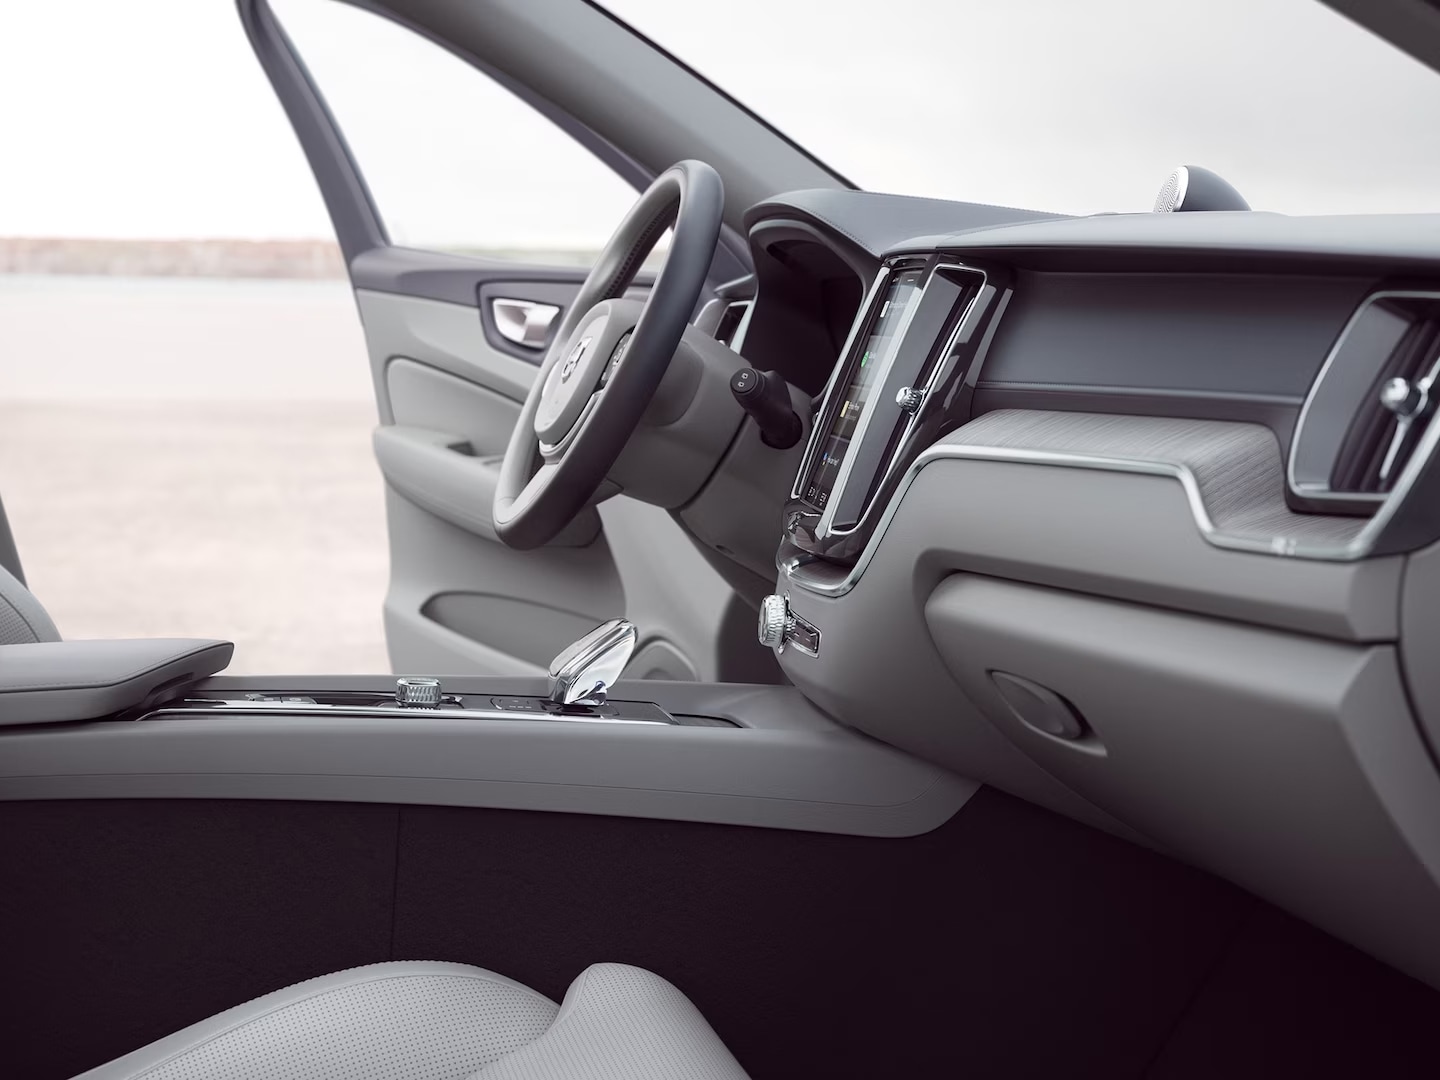 Přední část interiéru vozu Volvo XC60 s otevřenými dveřmi řidiče.